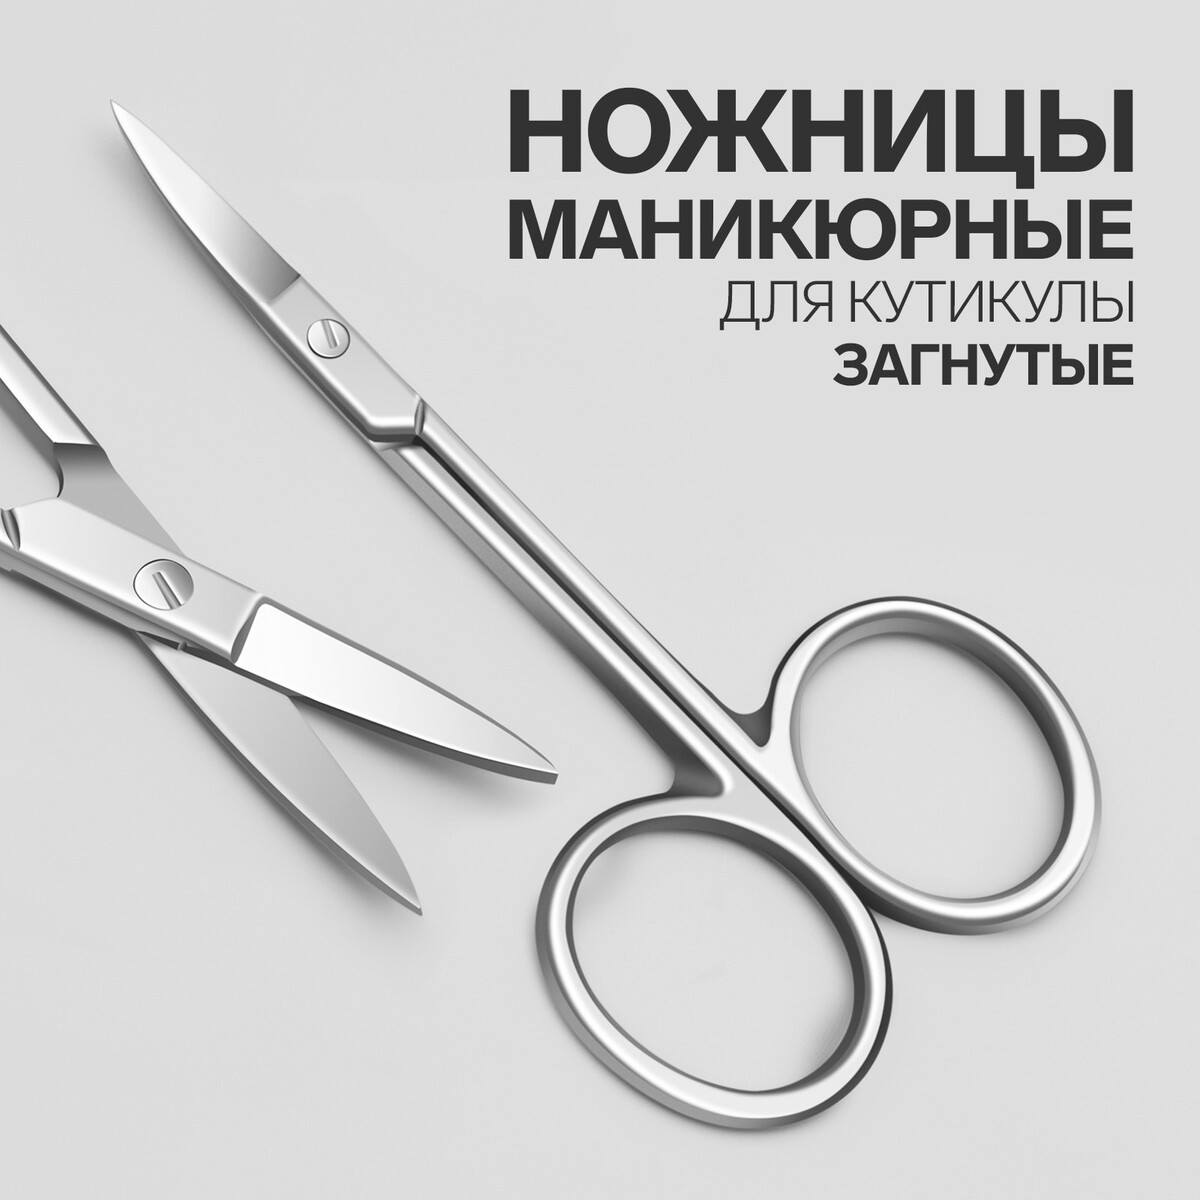 Ножницы маникюрные для кутикулы, загнутые, узкие, 9,3 см, цвет серебристый ножницы для детского маникюра ладушки мультидом трейдинг vl90 136